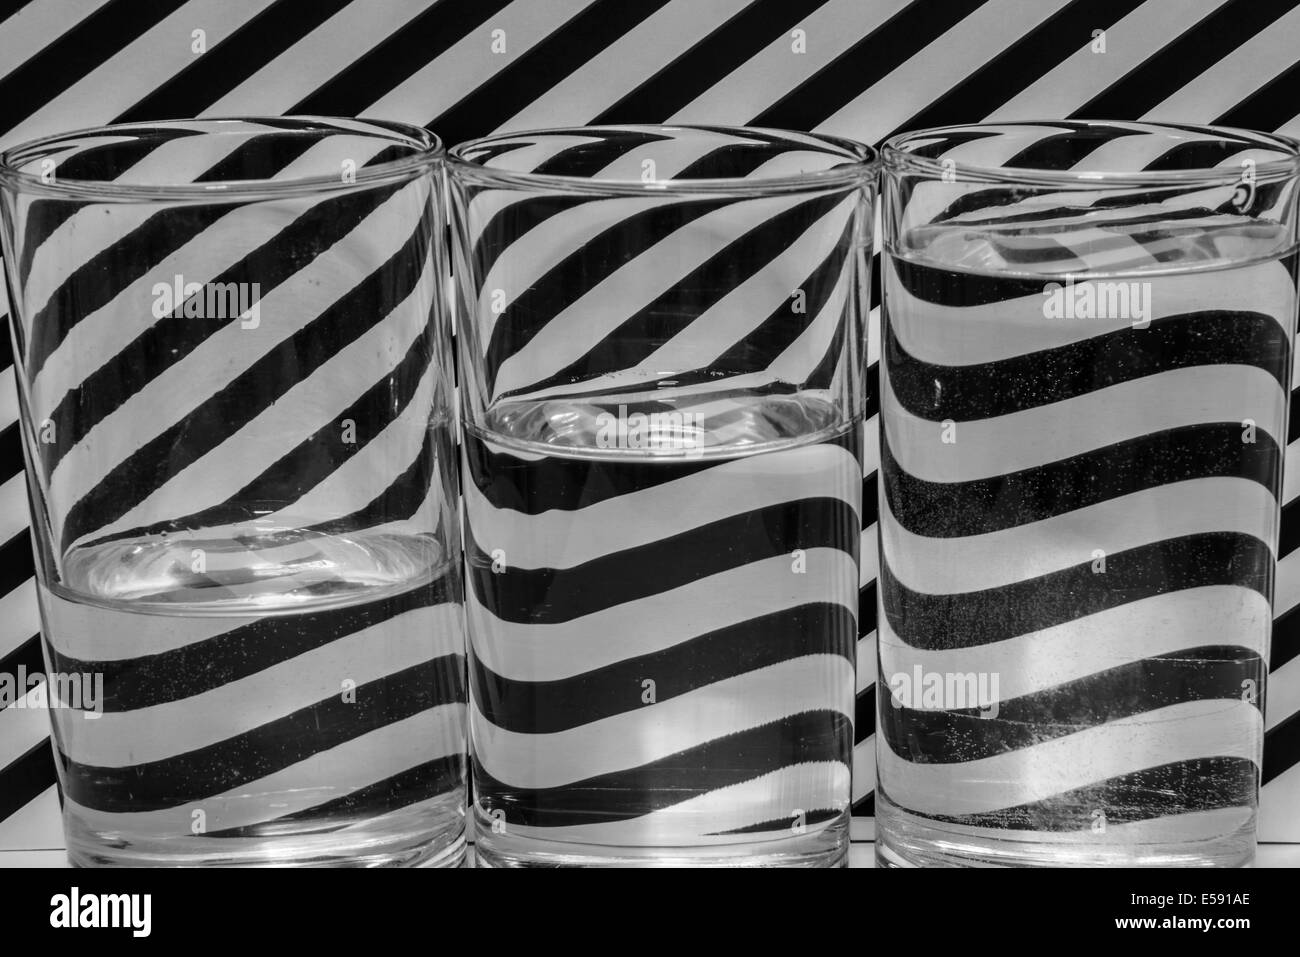 Le pattern design fond noir et blanc. Banque D'Images